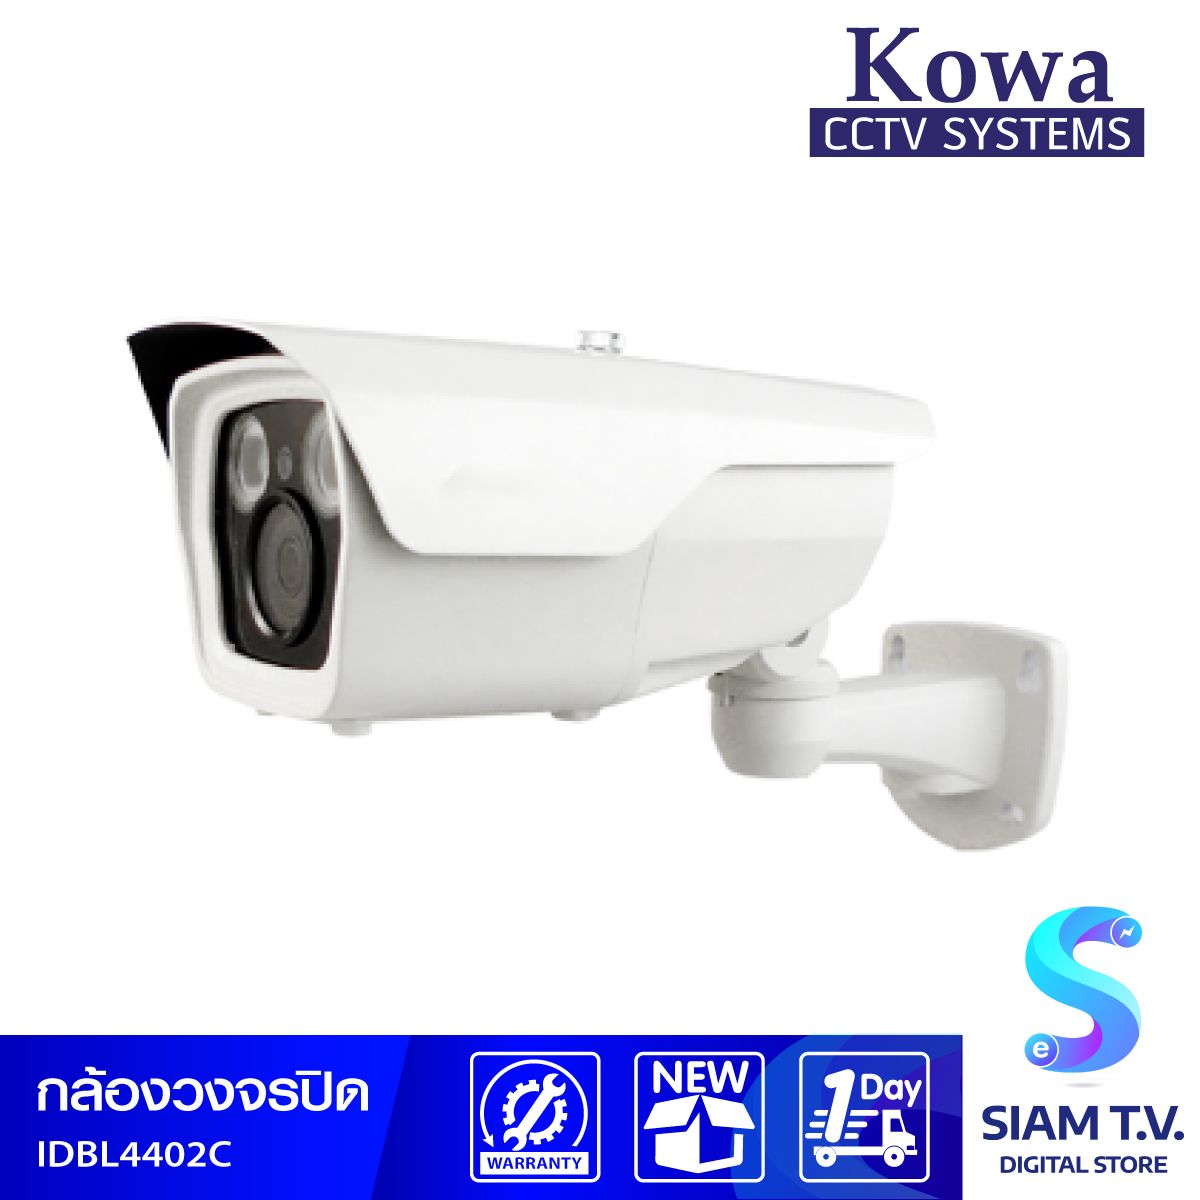 KOWA กล้องวงจรปิด ICATCH ระบบ 4K UHD รุ่น ID-BL4402C ความละเอียด 4 ล้าน ทรงกระบอก